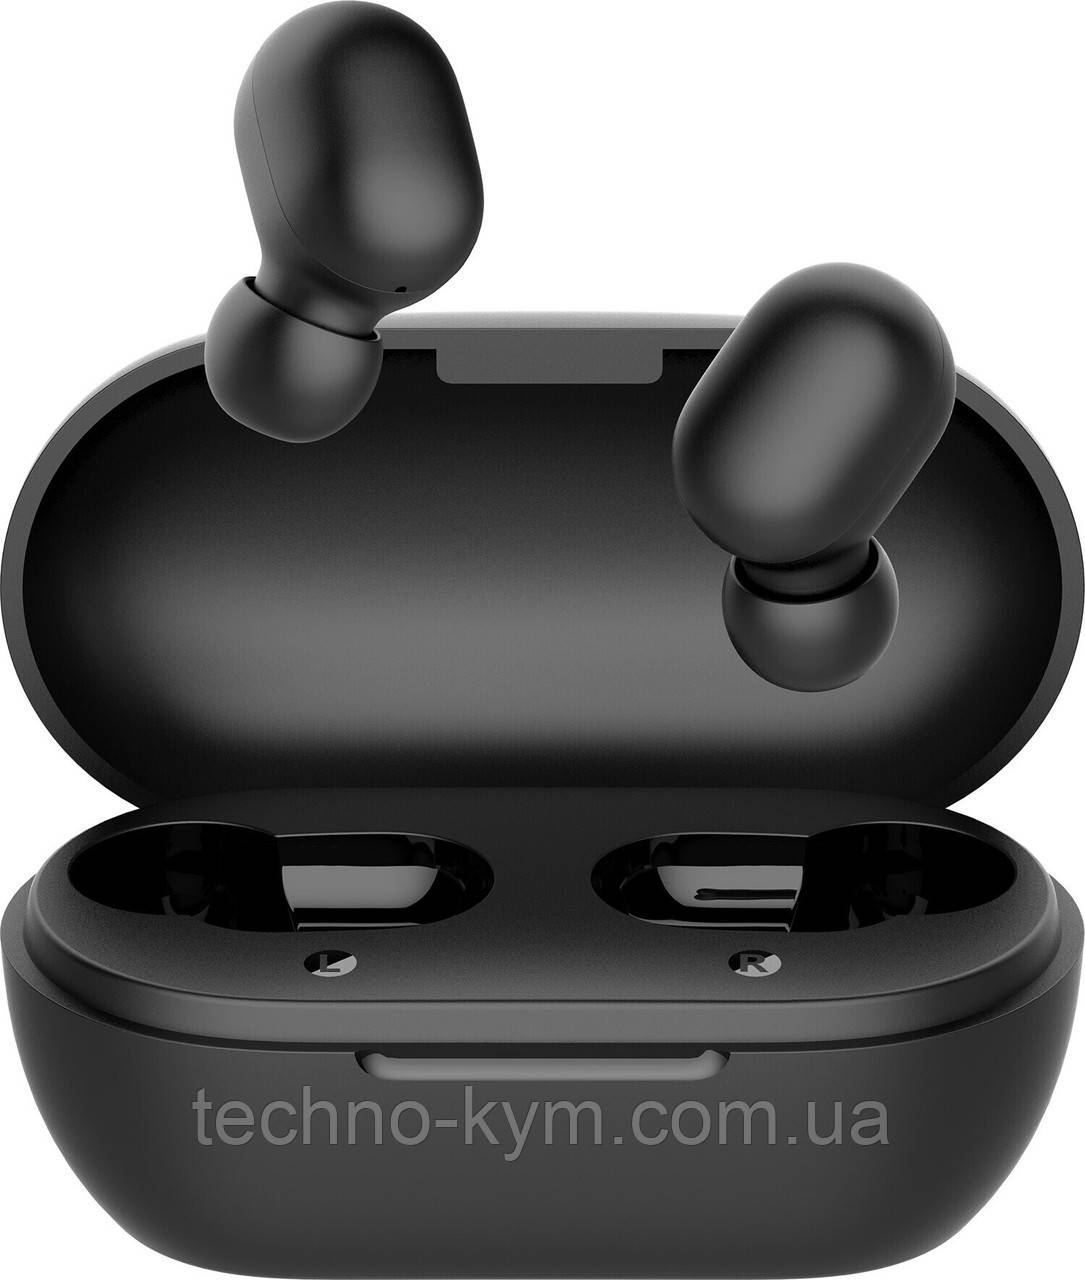 Навушники Bluetooth Haylou GT1 Pro TWS Навушники Black UA UCRF Гарантія 12 місяців, фото 1